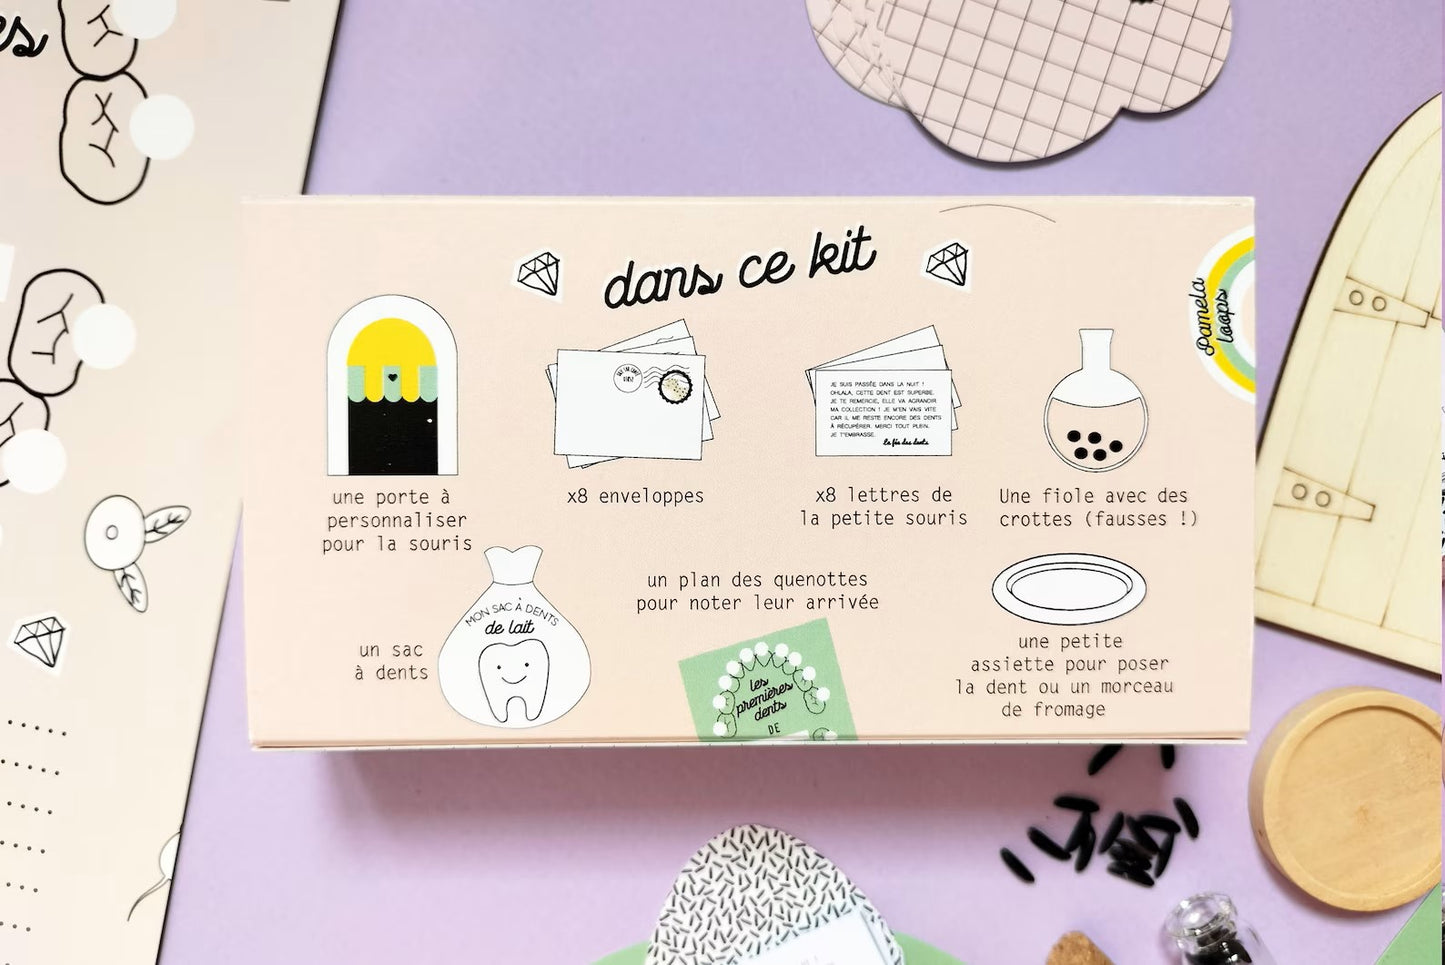 My milk teeth | Little Mouse Passage Kit